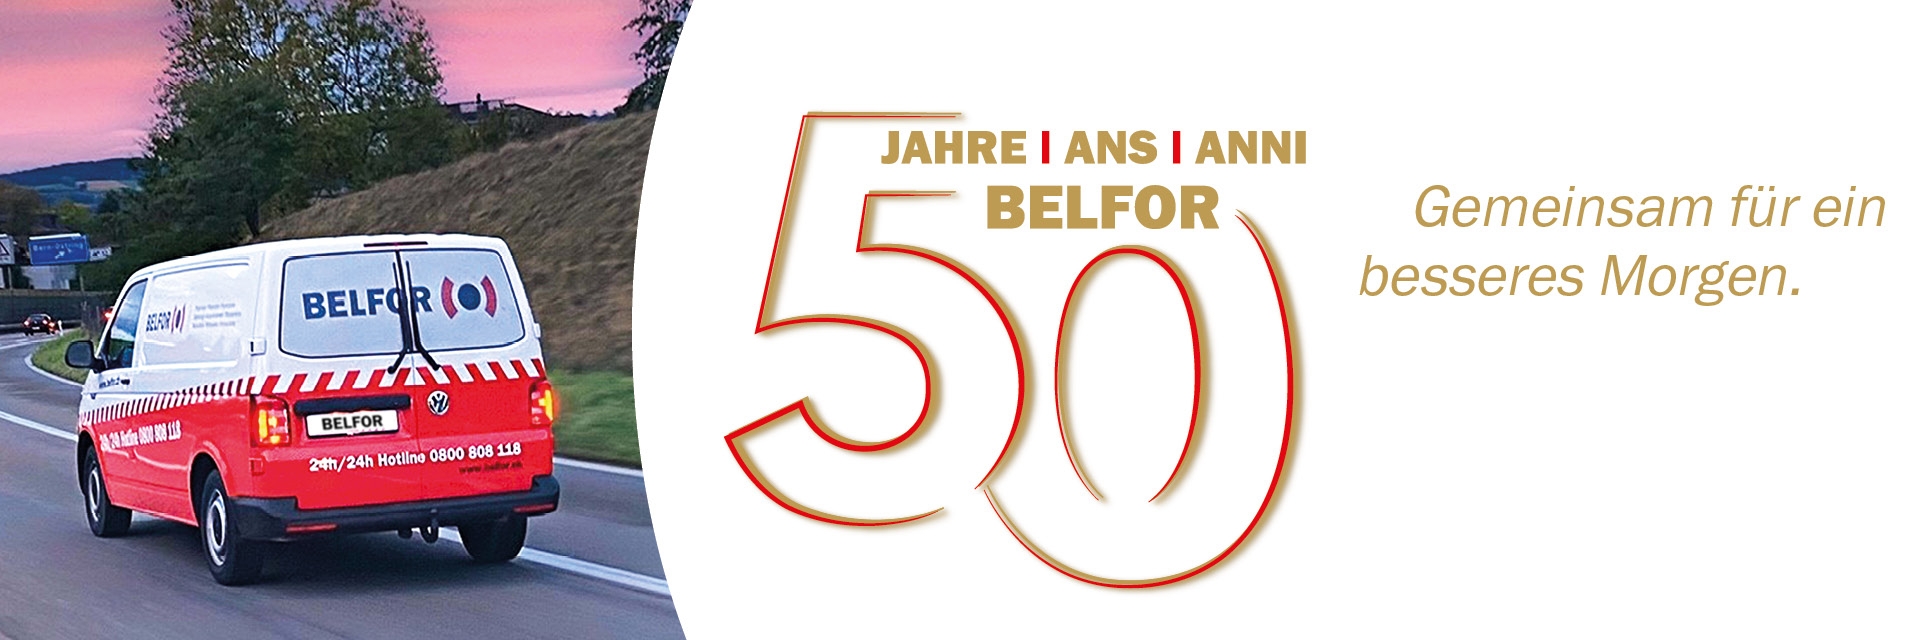 50 Jahre Jubiläum BELFOR (Suisse) AG